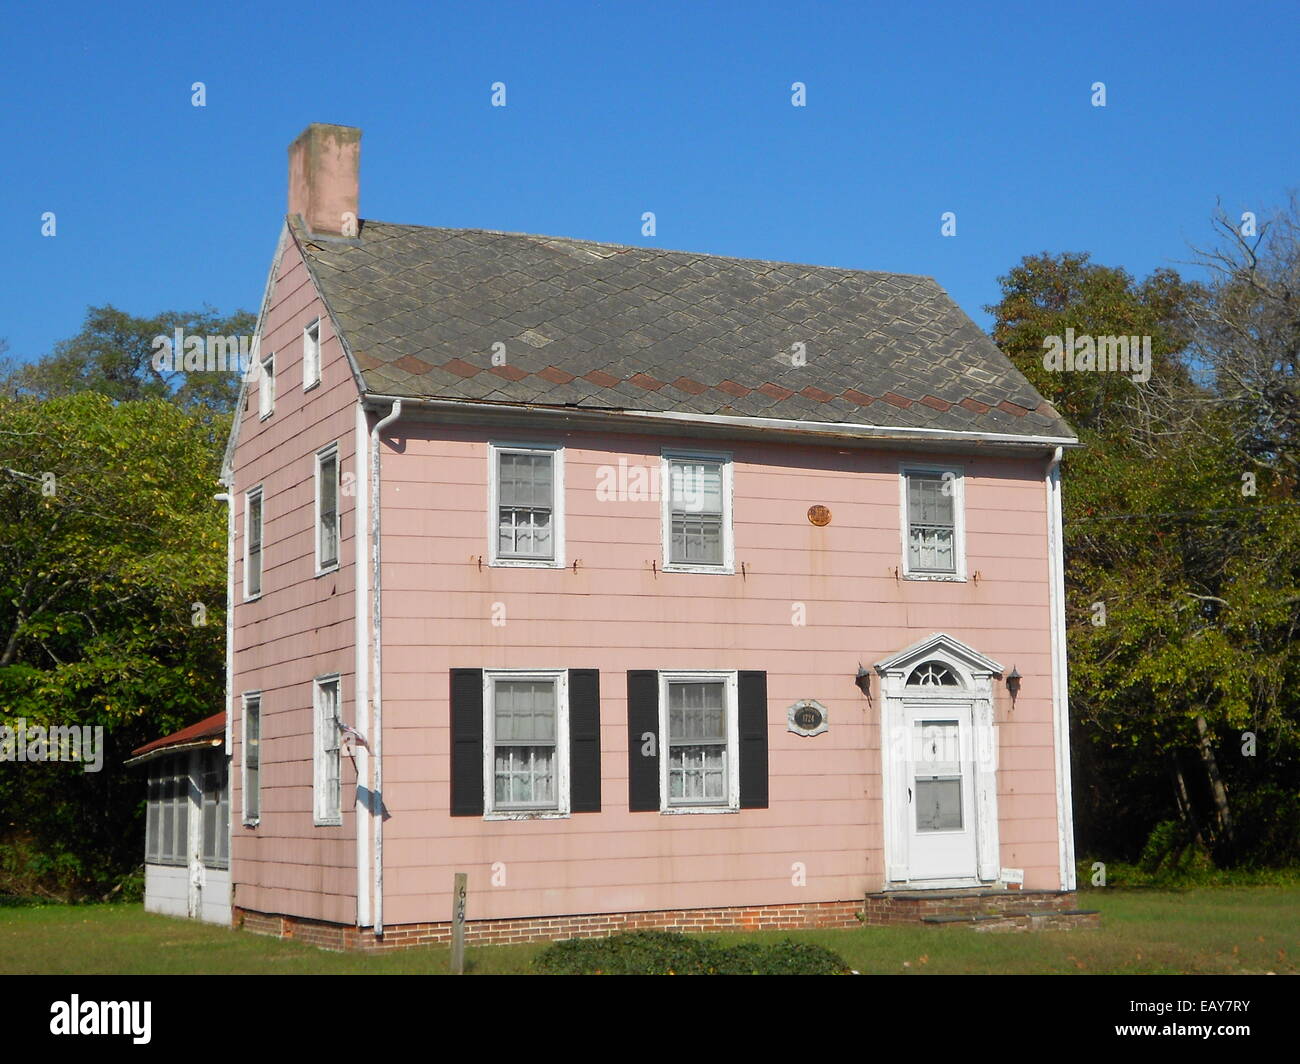 Juez Nathaniel fomentar la casa listada en el NRHP el 25 de agosto de 2014 (#14000516) en 1649 Bayshore Dr. en Villas, Bajar Township, condado de Cape May, Nueva Jersey Foto de stock